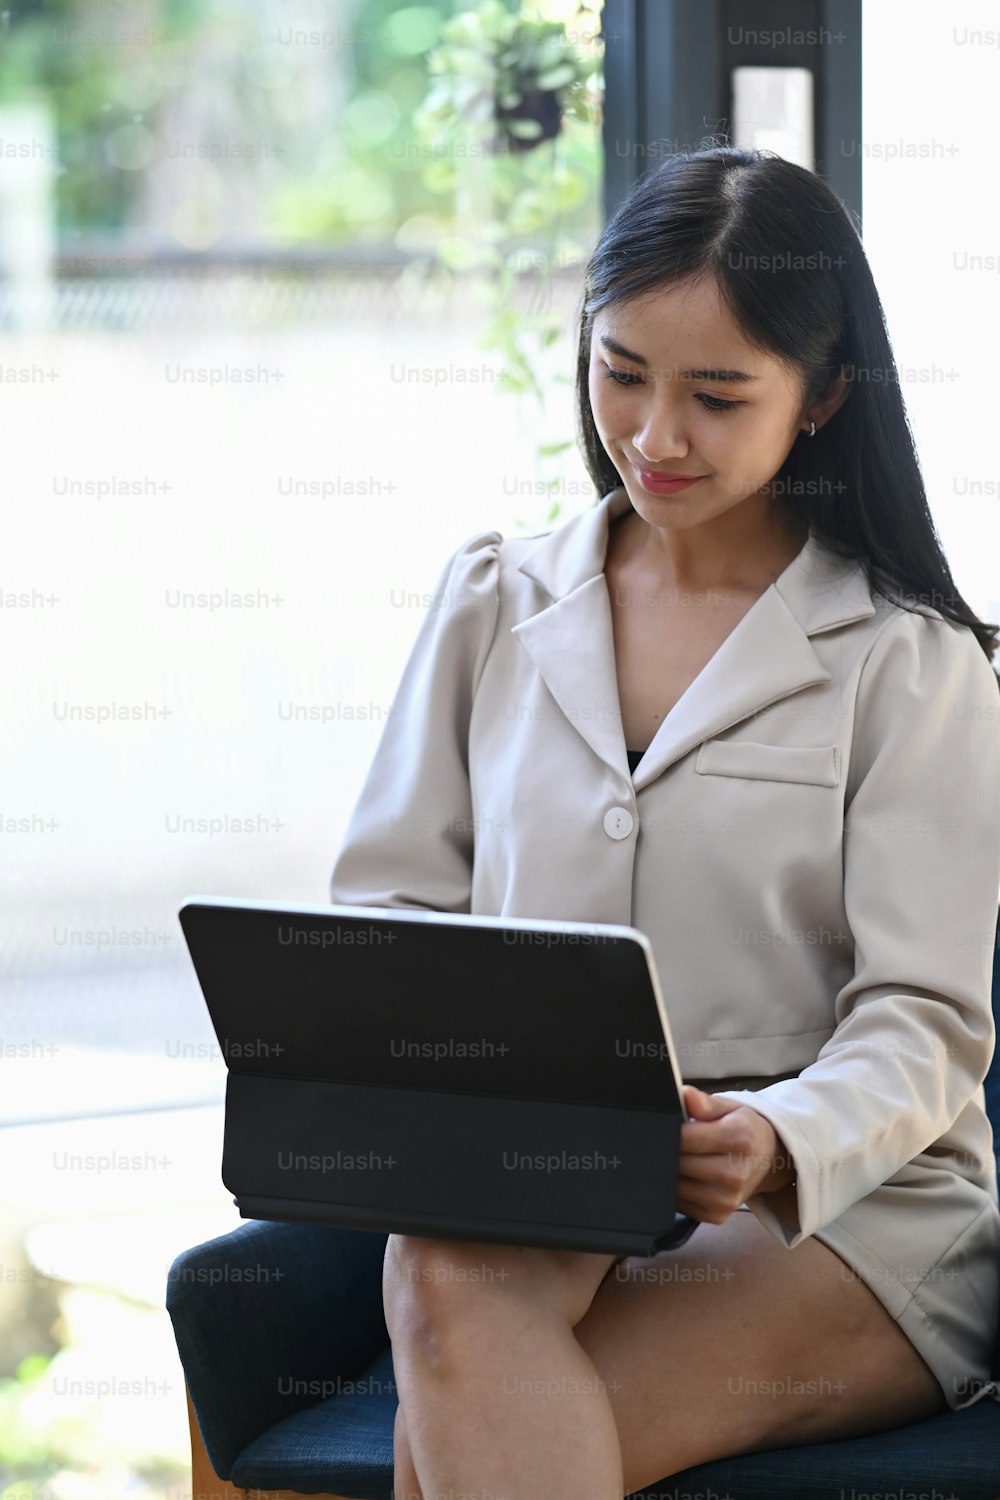 밝은 사무실에 앉아 컴퓨터 태블릿을 사용하는 웃고 있는 젊은 아시아 여성의 초상화.